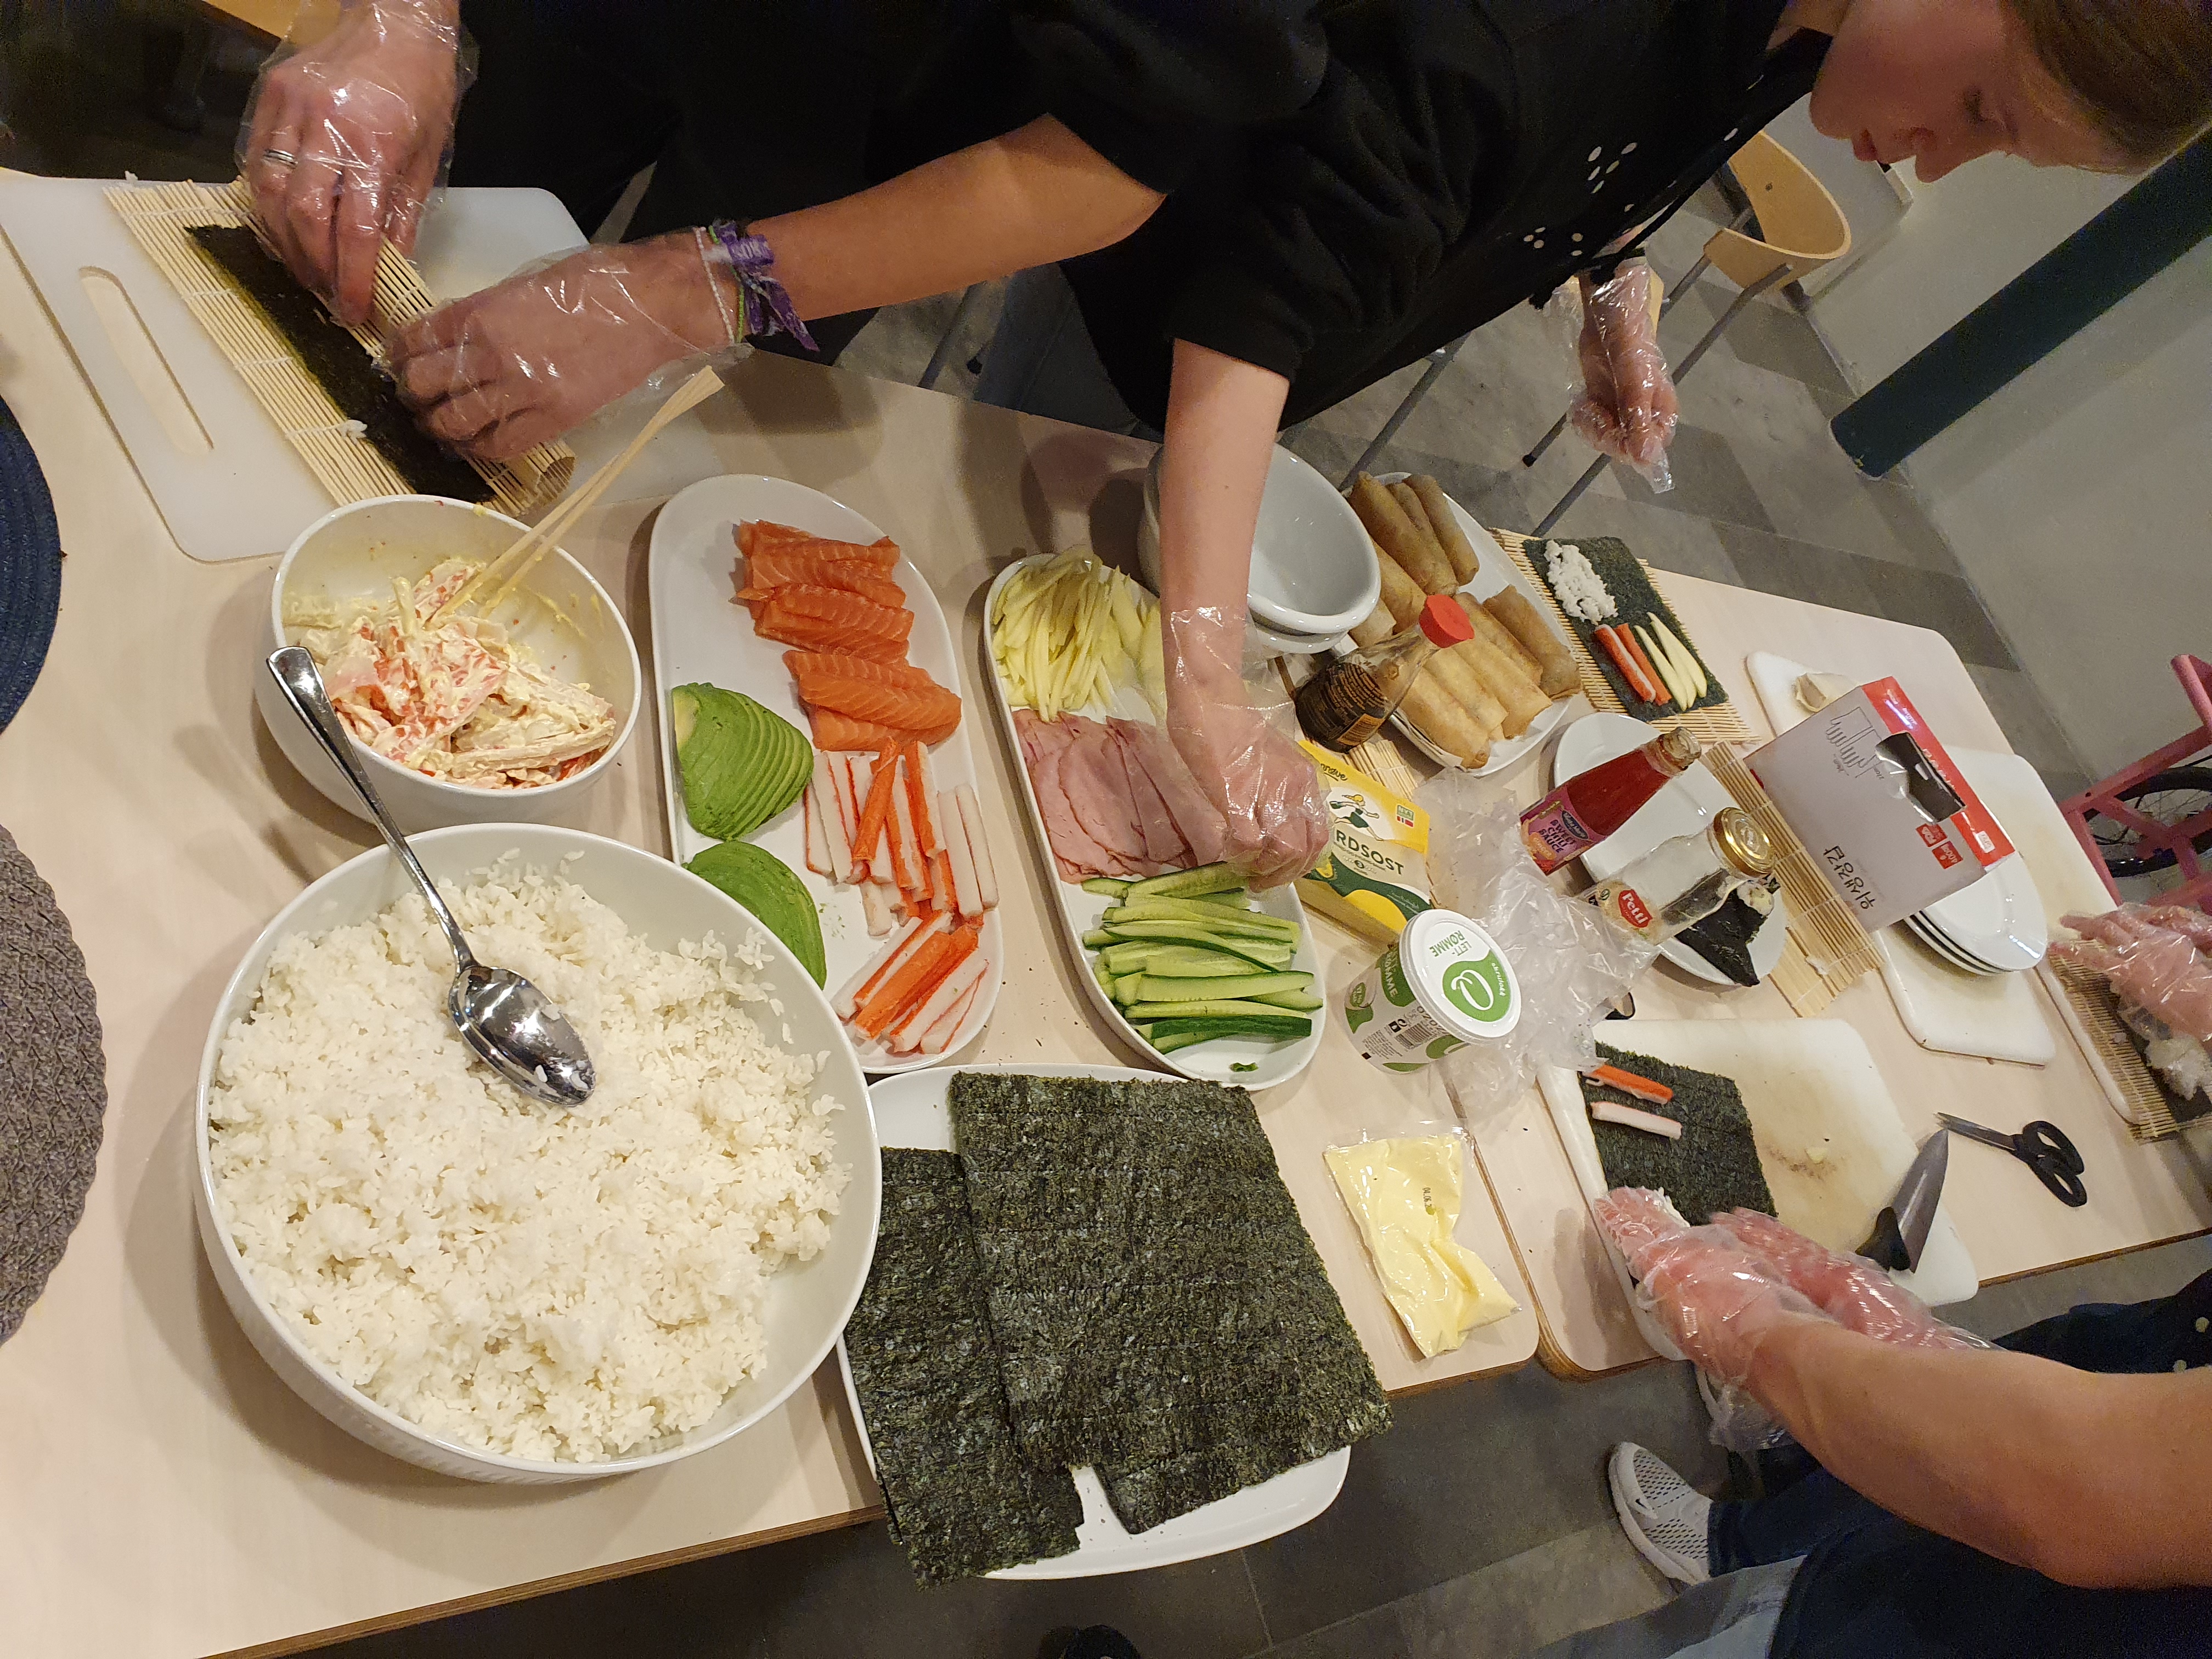 Ungdommar står ved eit bord, dei har plasthanskar på og lager og ruller sushi. Ulike ingredienser ligg på bordet.